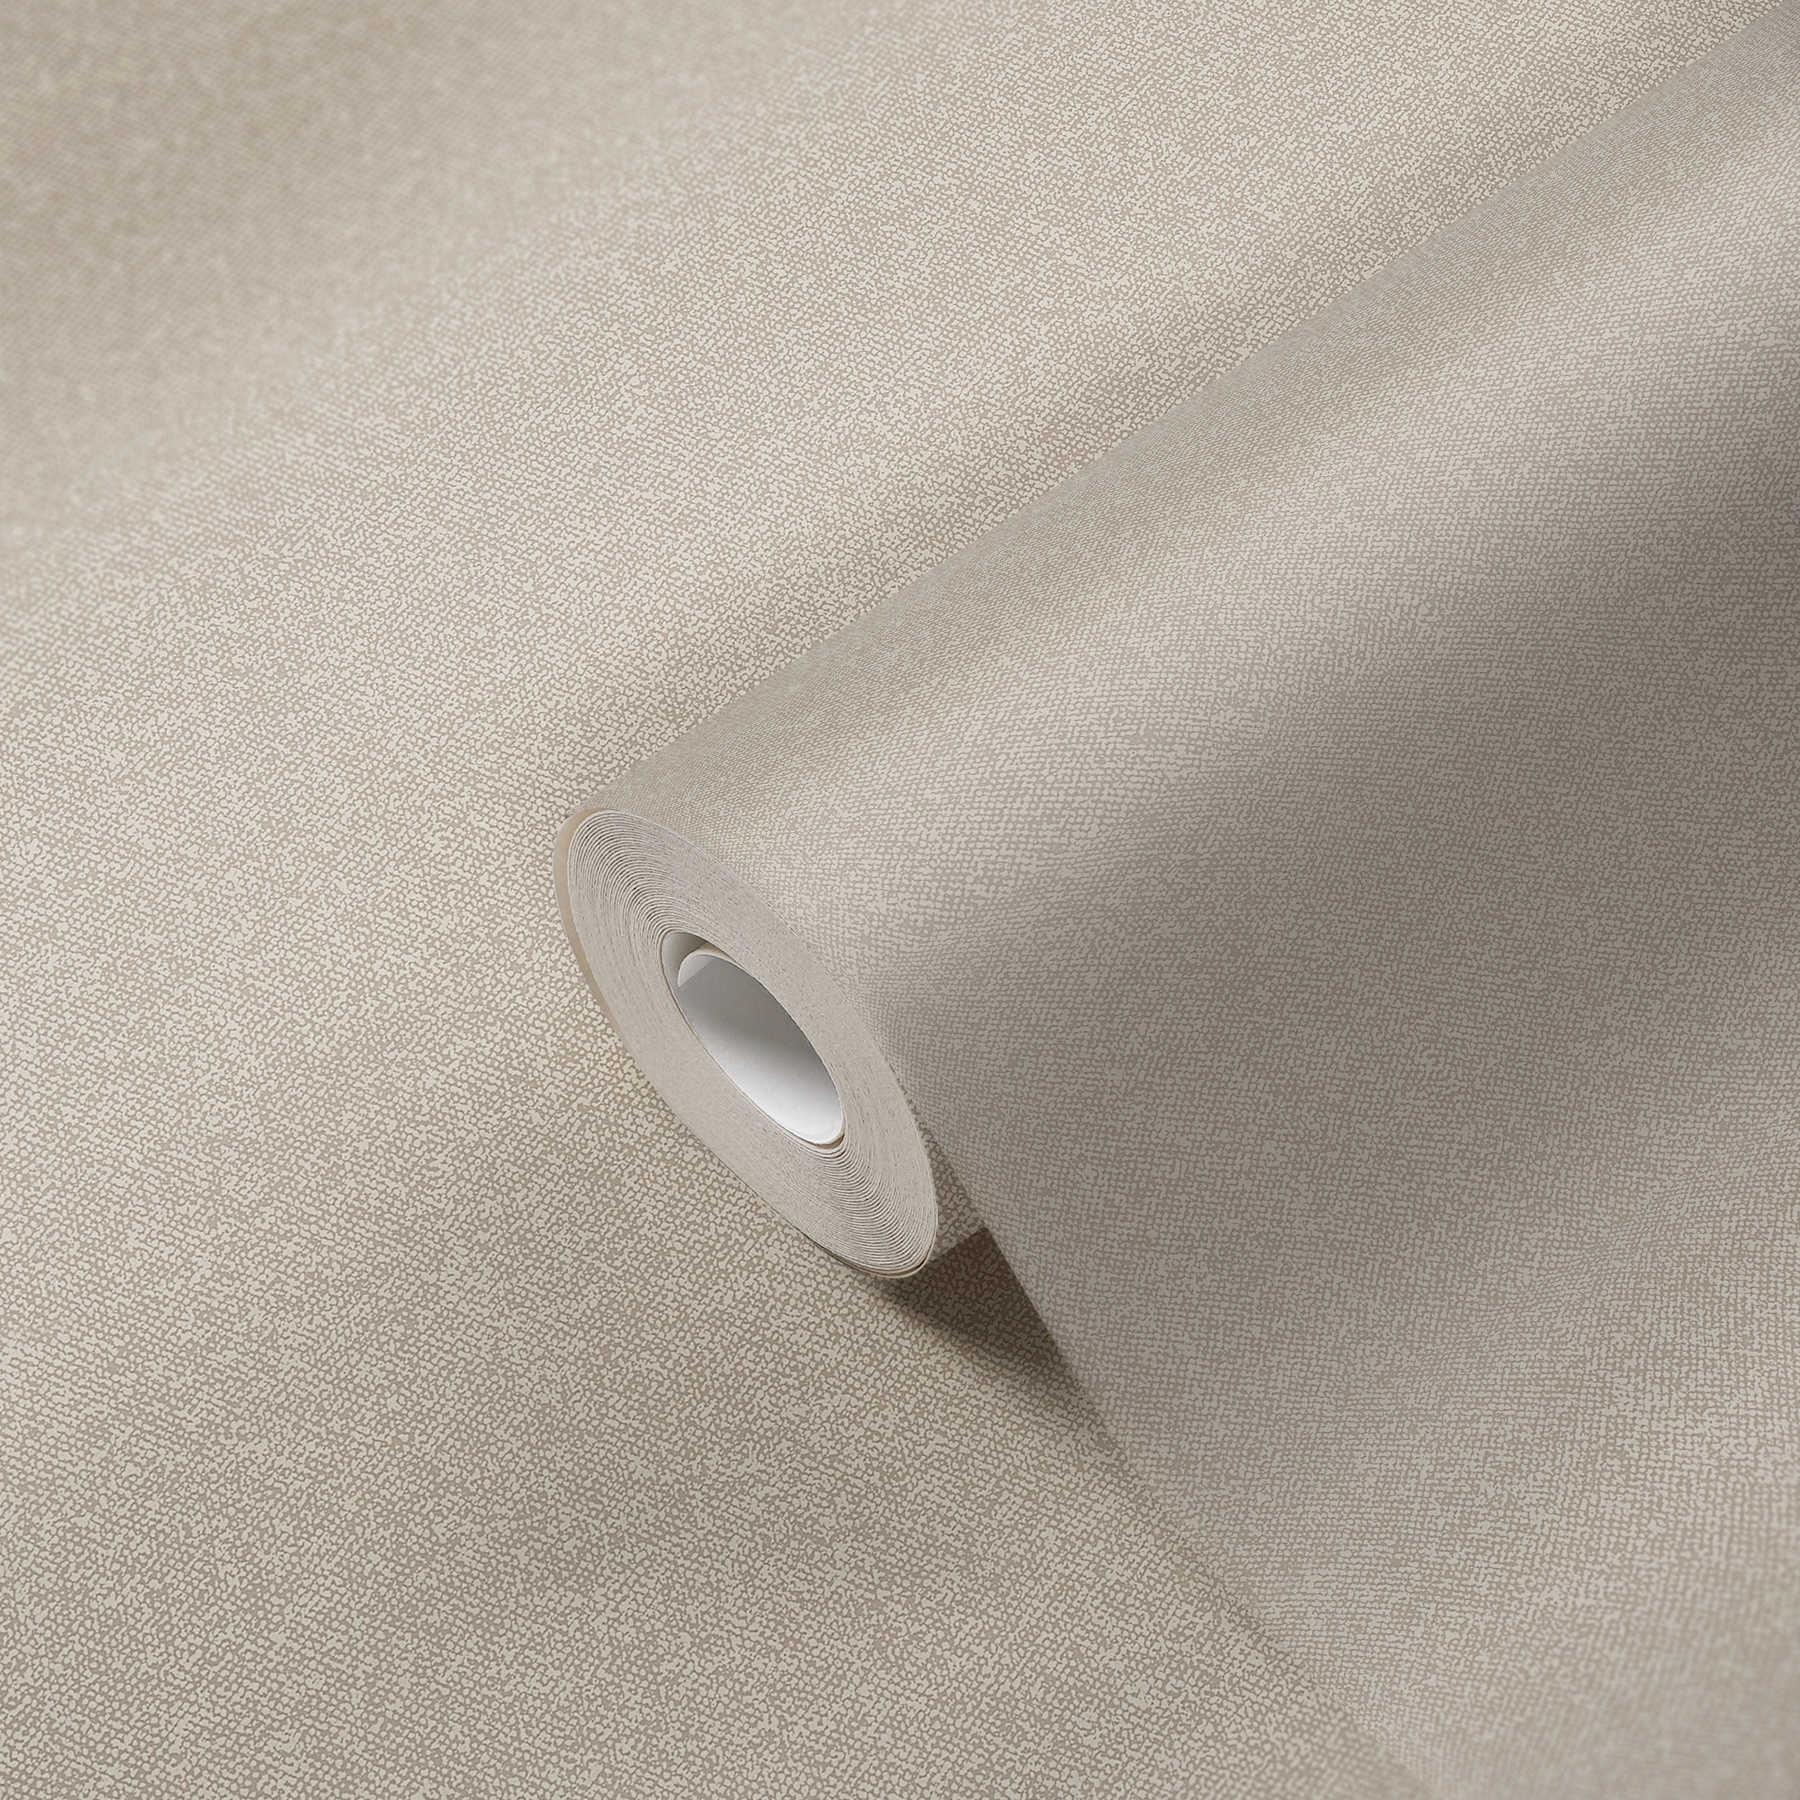             Papier peint à l'aspect textile uni - beige, crème
        